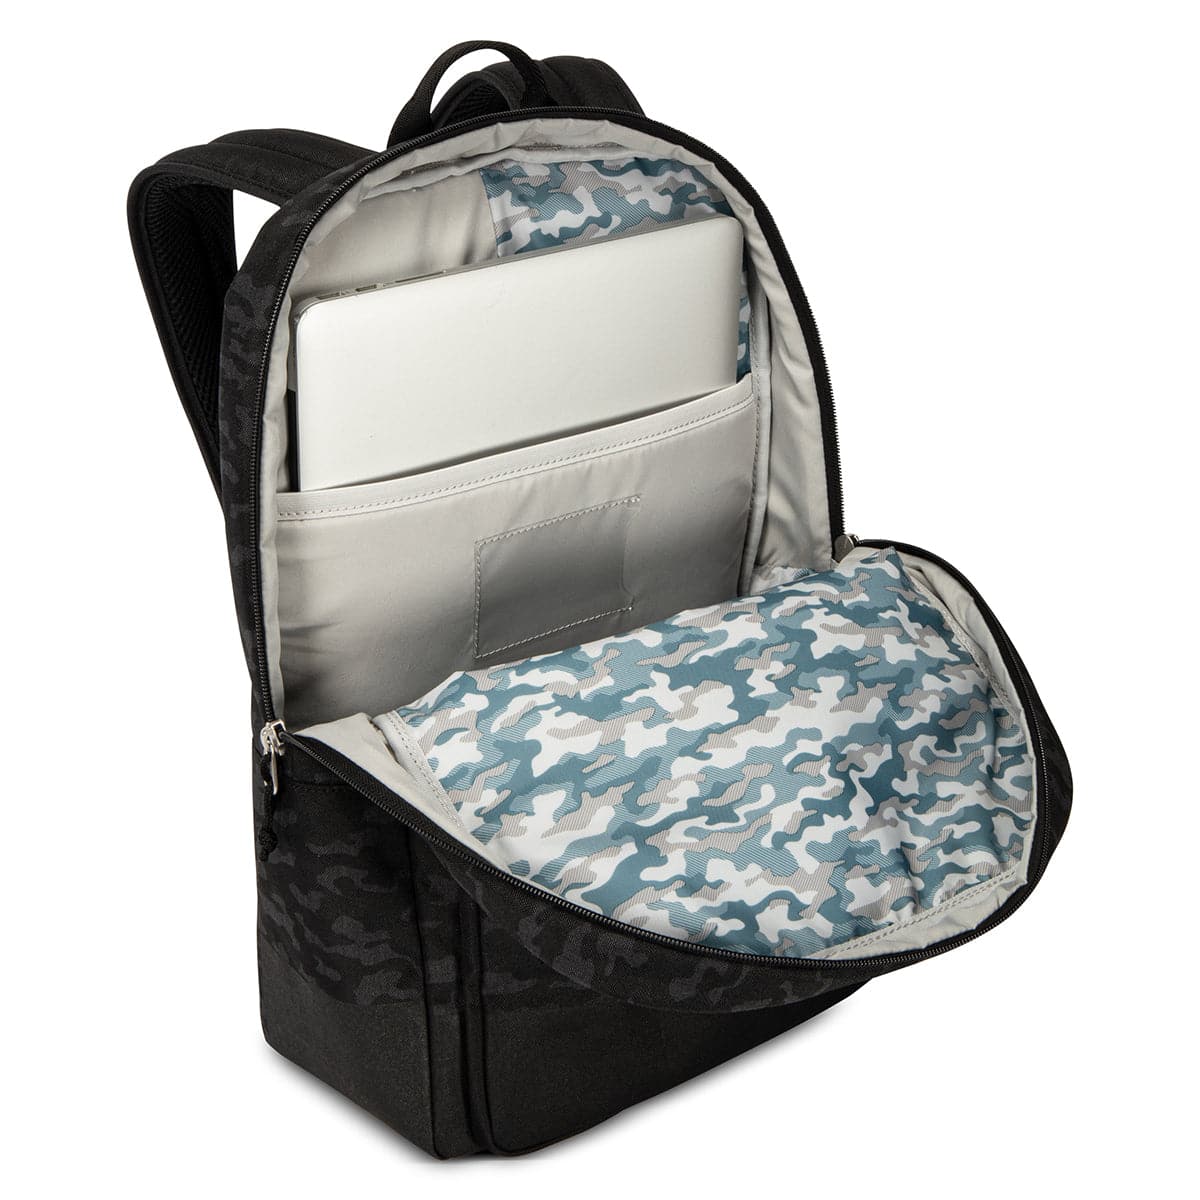 Skyway Rainier Simple Backpack - 16L